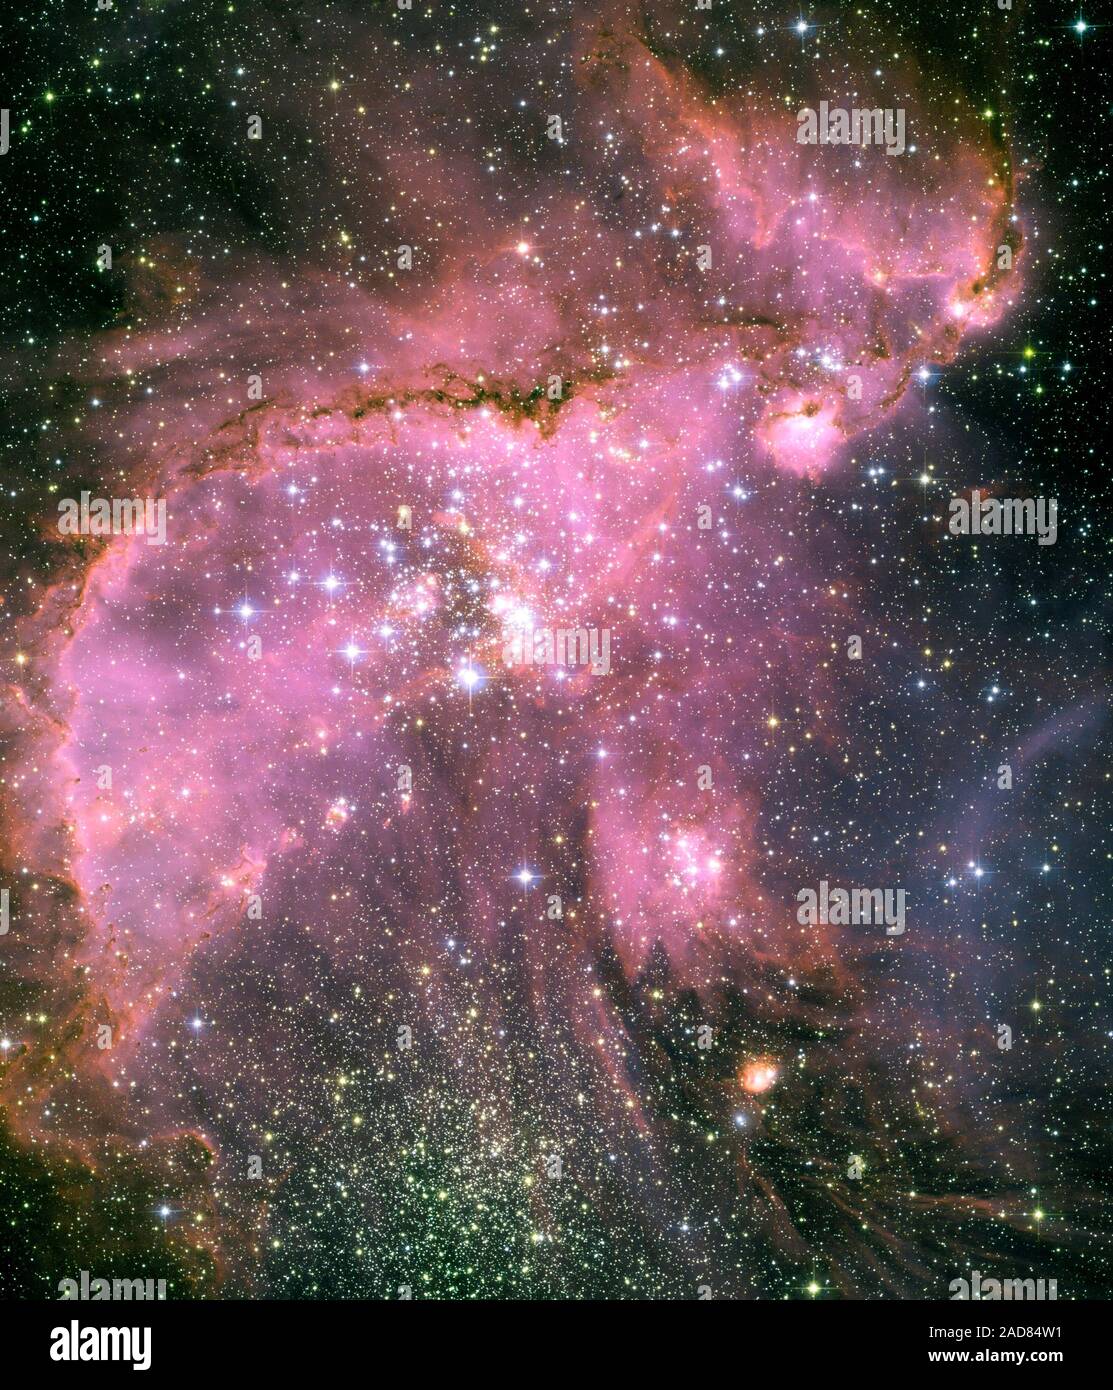 Dies ist ein Weltraumteleskop Hubble sehen sie eine der dynamischsten und aufwendig detaillierte Sterne bilden Regionen im Raum gelegen, 210.000 Lichtjahre entfernt in der Kleinen Magellanschen Wolke (SMC), einer Satellitengalaxie unserer Milchstraße. Im Zentrum der Region ist ein leuchtender Star Cluster bezeichnet NGC 346. Eine dramatische Struktur von gewölbten, zackige Filamente mit einem ausgeprägten Grat umgibt den Cluster. Ein Torrent der Strahlung von heißen Sternen des Clusters isst in den dichteren Bereichen Erstellen einer fantasy Skulptur aus Staub und Gas. Die dunklen, aufwändig wulstigen Rand der Ridge, in Silhouette von Hubble gesehen, ist Pa Stockfoto